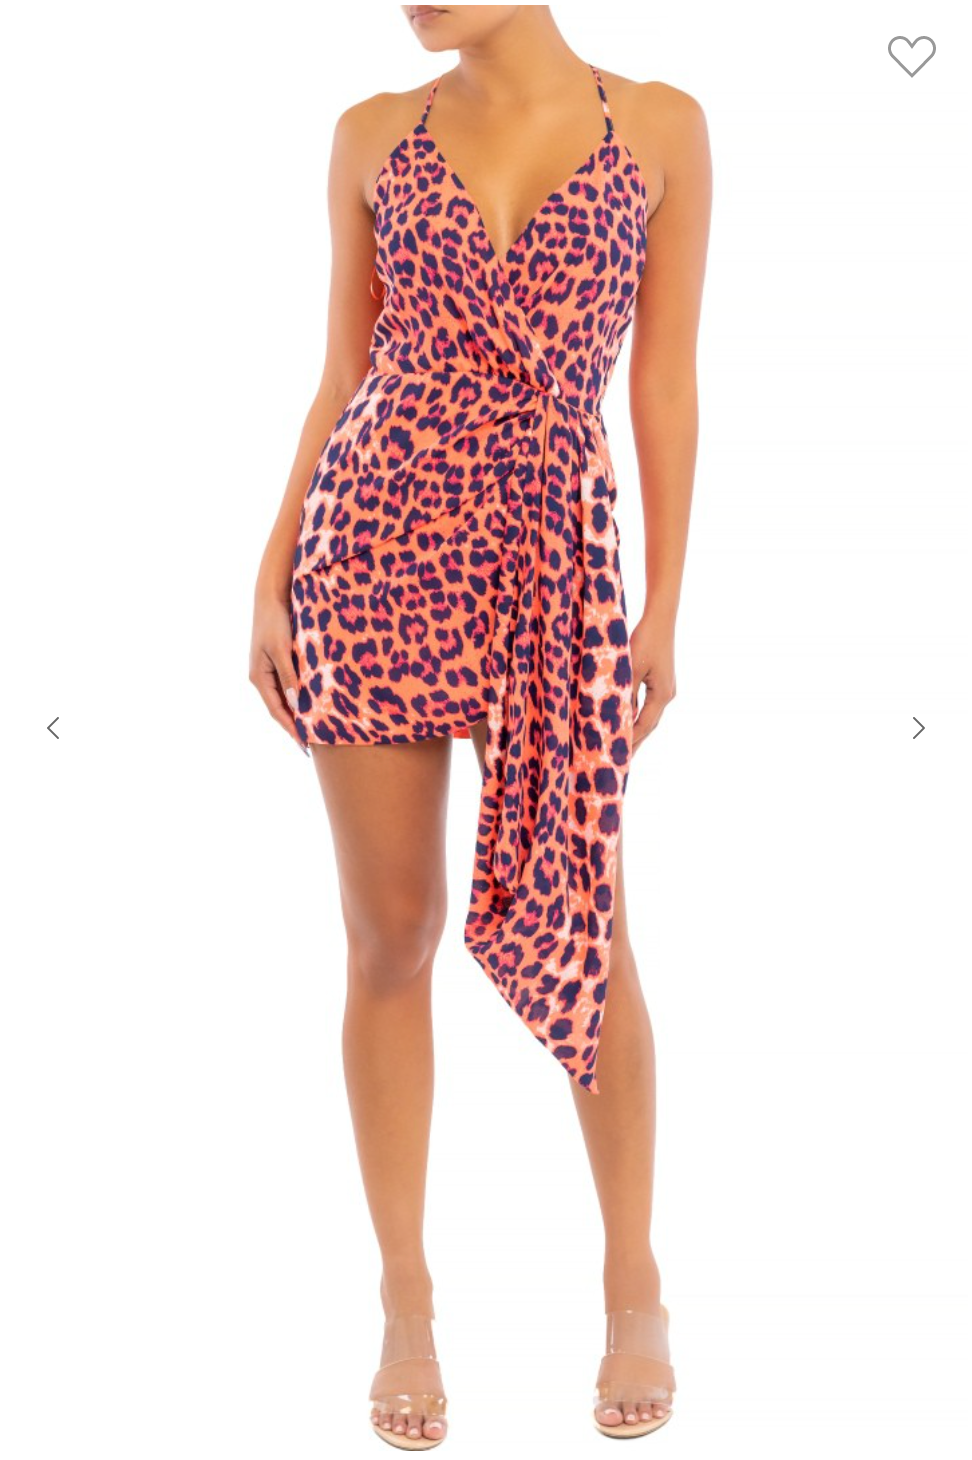 Neon Leopard Mini Dress